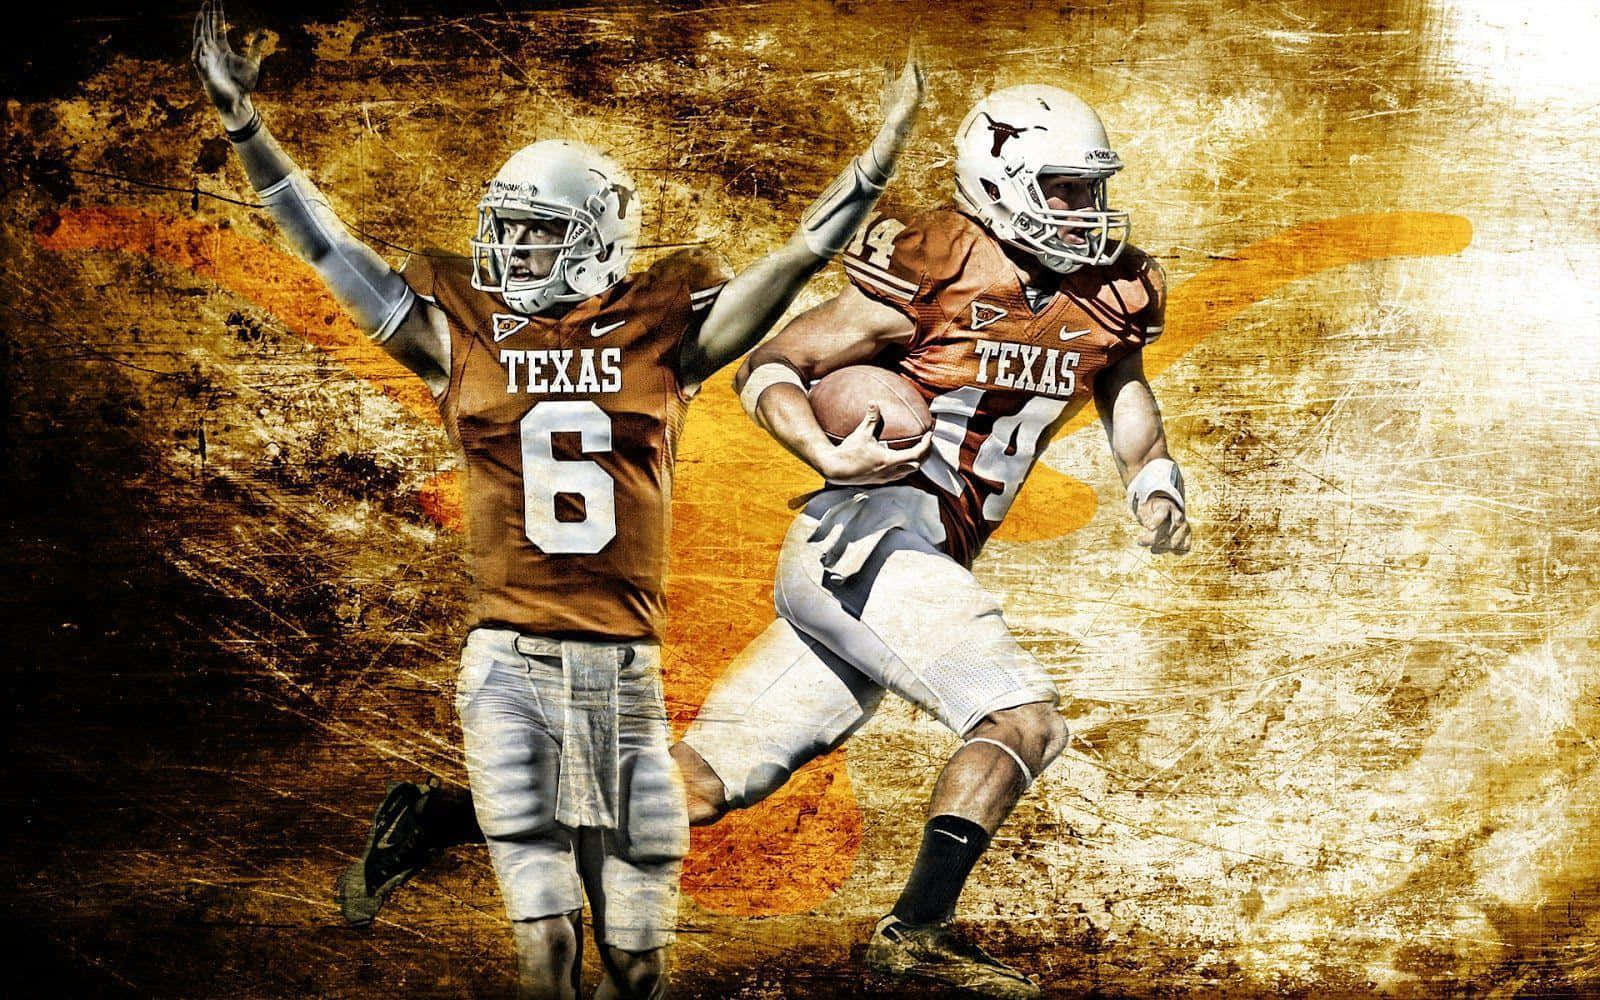 Kom og følg kraften af college fodbold i Texas! Wallpaper